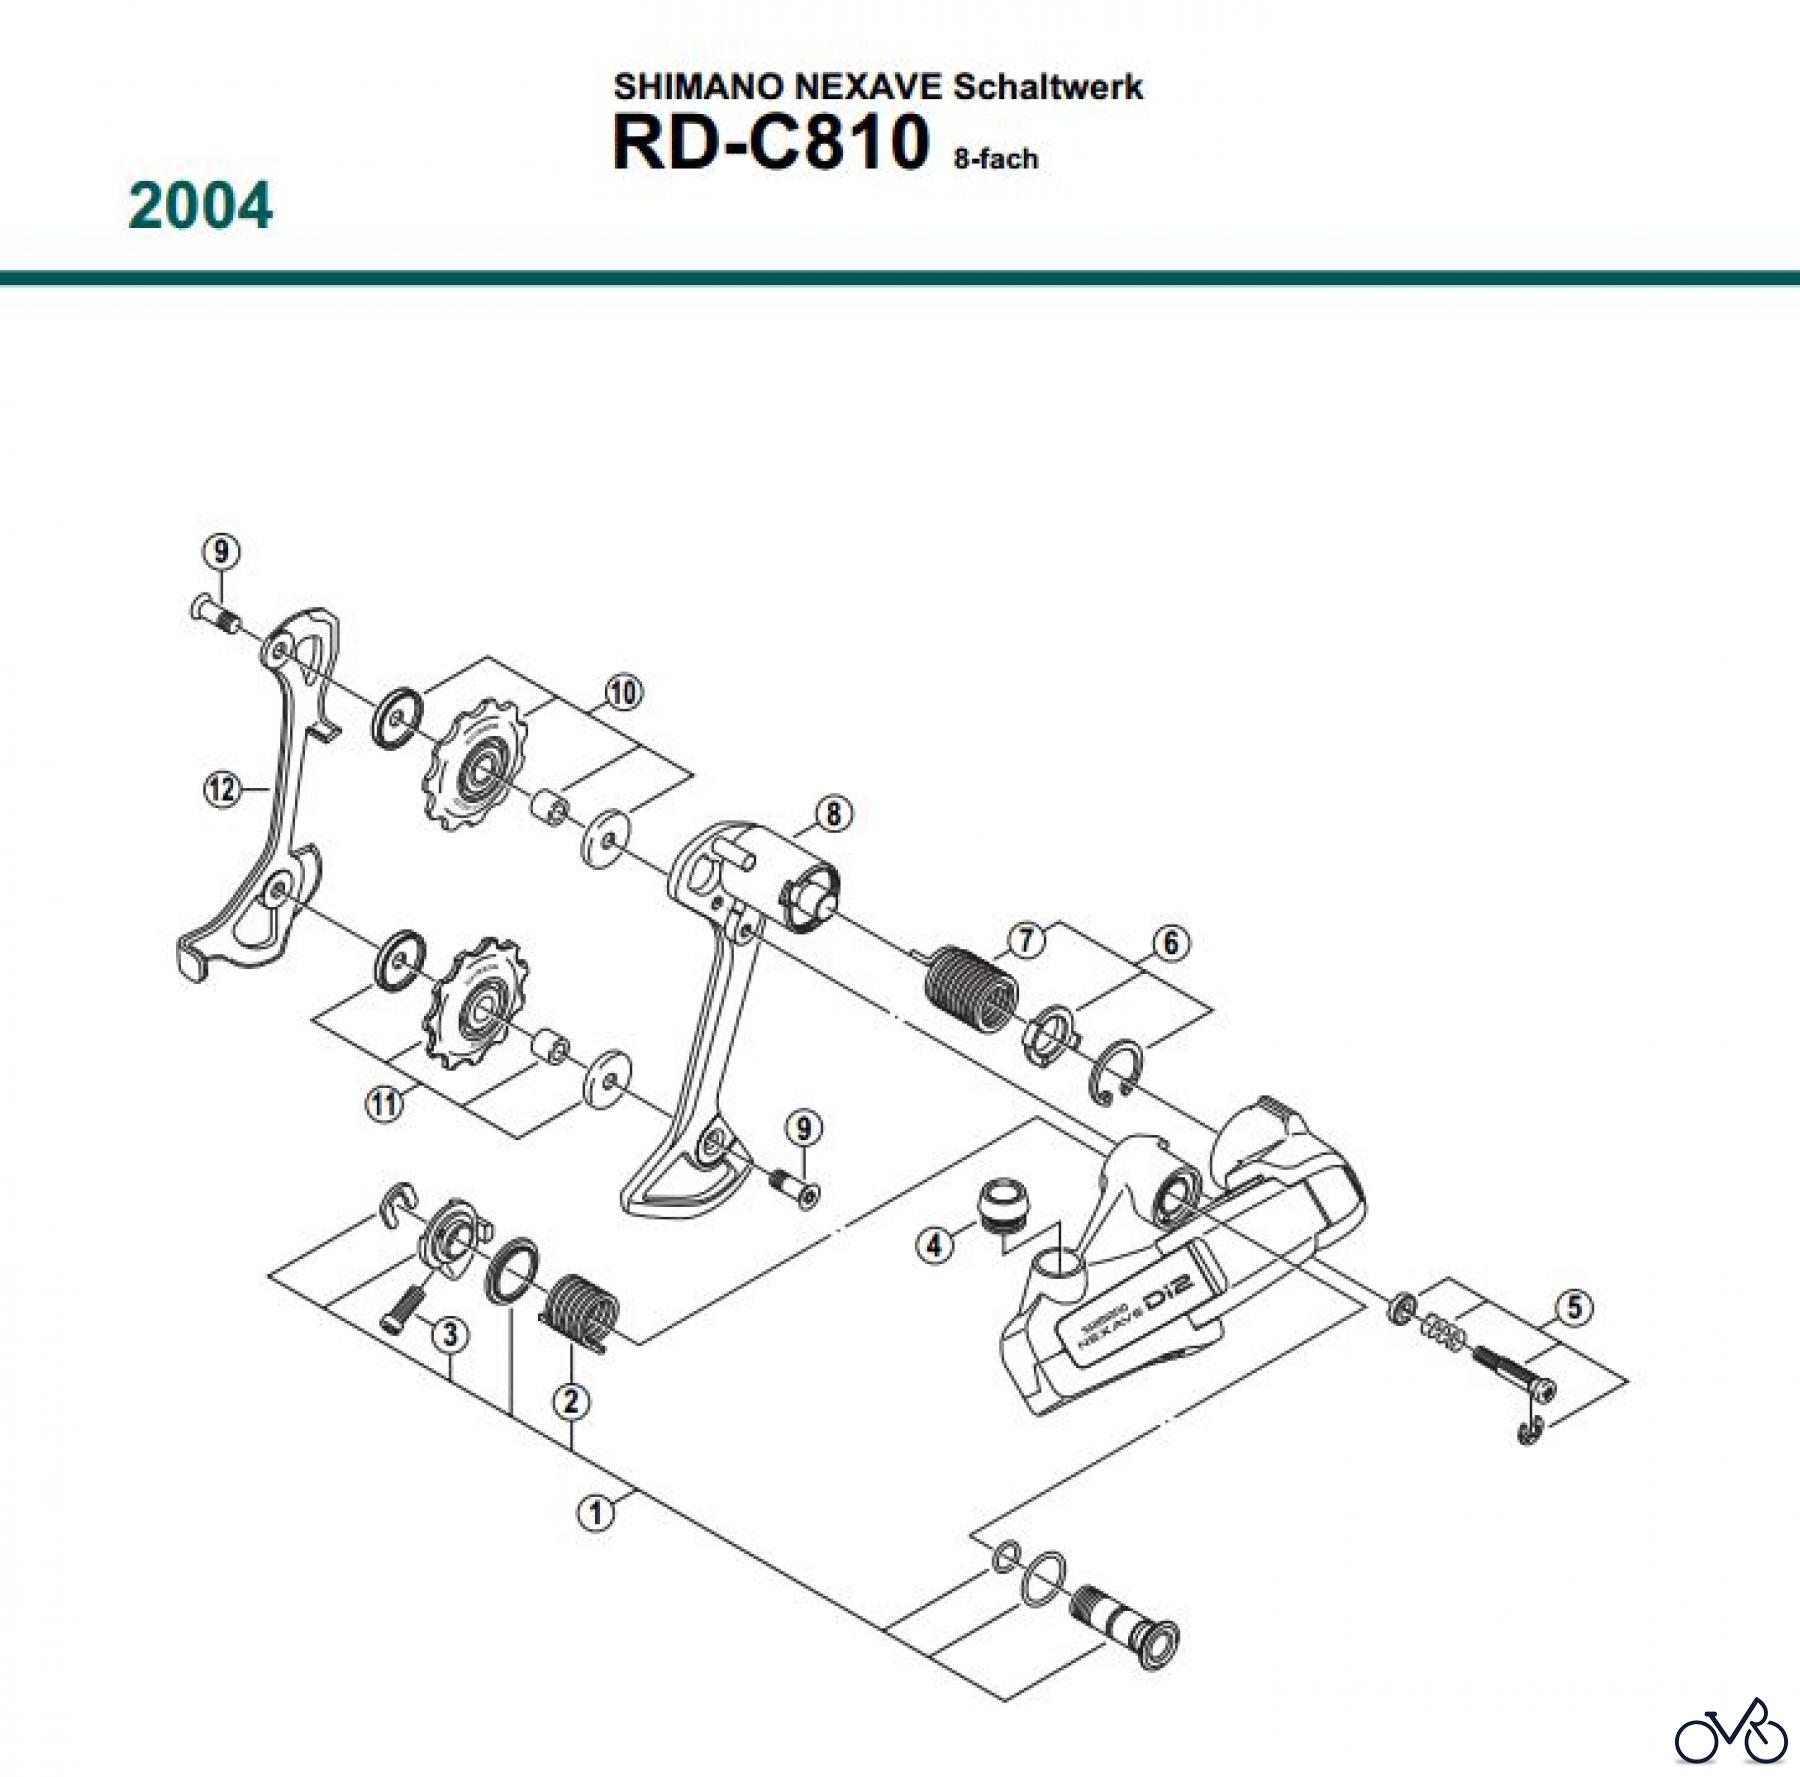  Shimano RD Rear Derailleur - Schaltwerk RD-C810-04